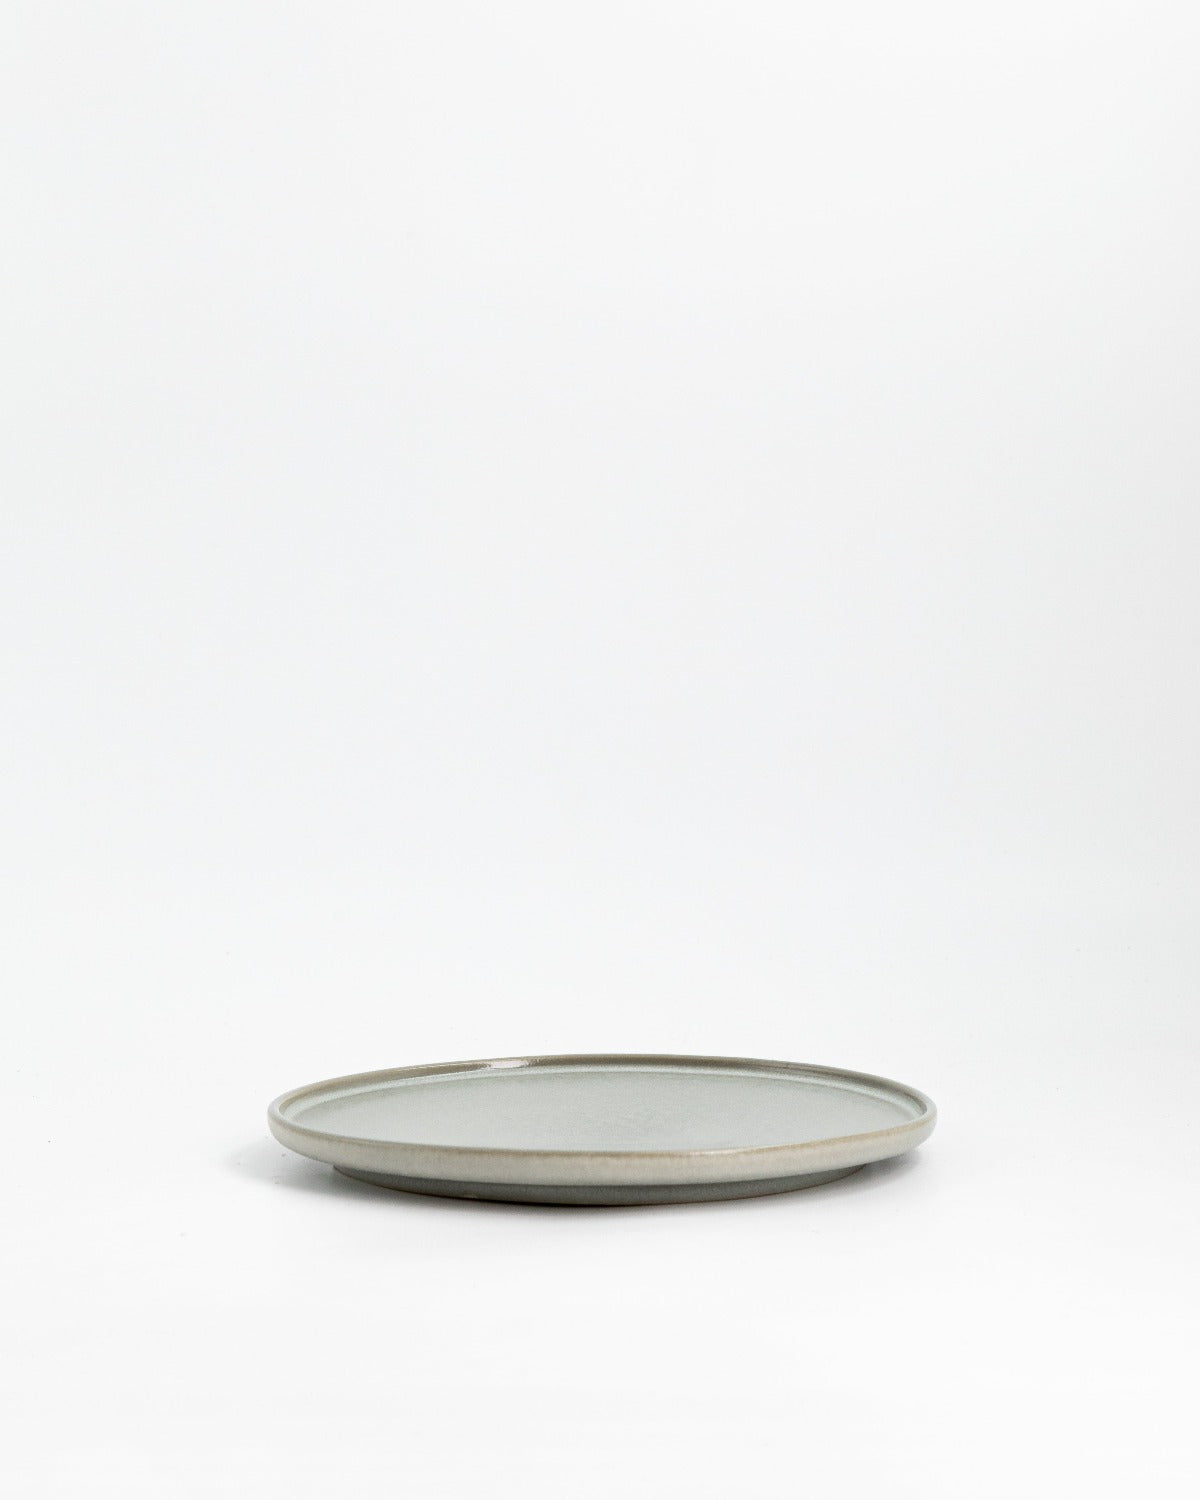 Farrago Plate Grey/22cm 